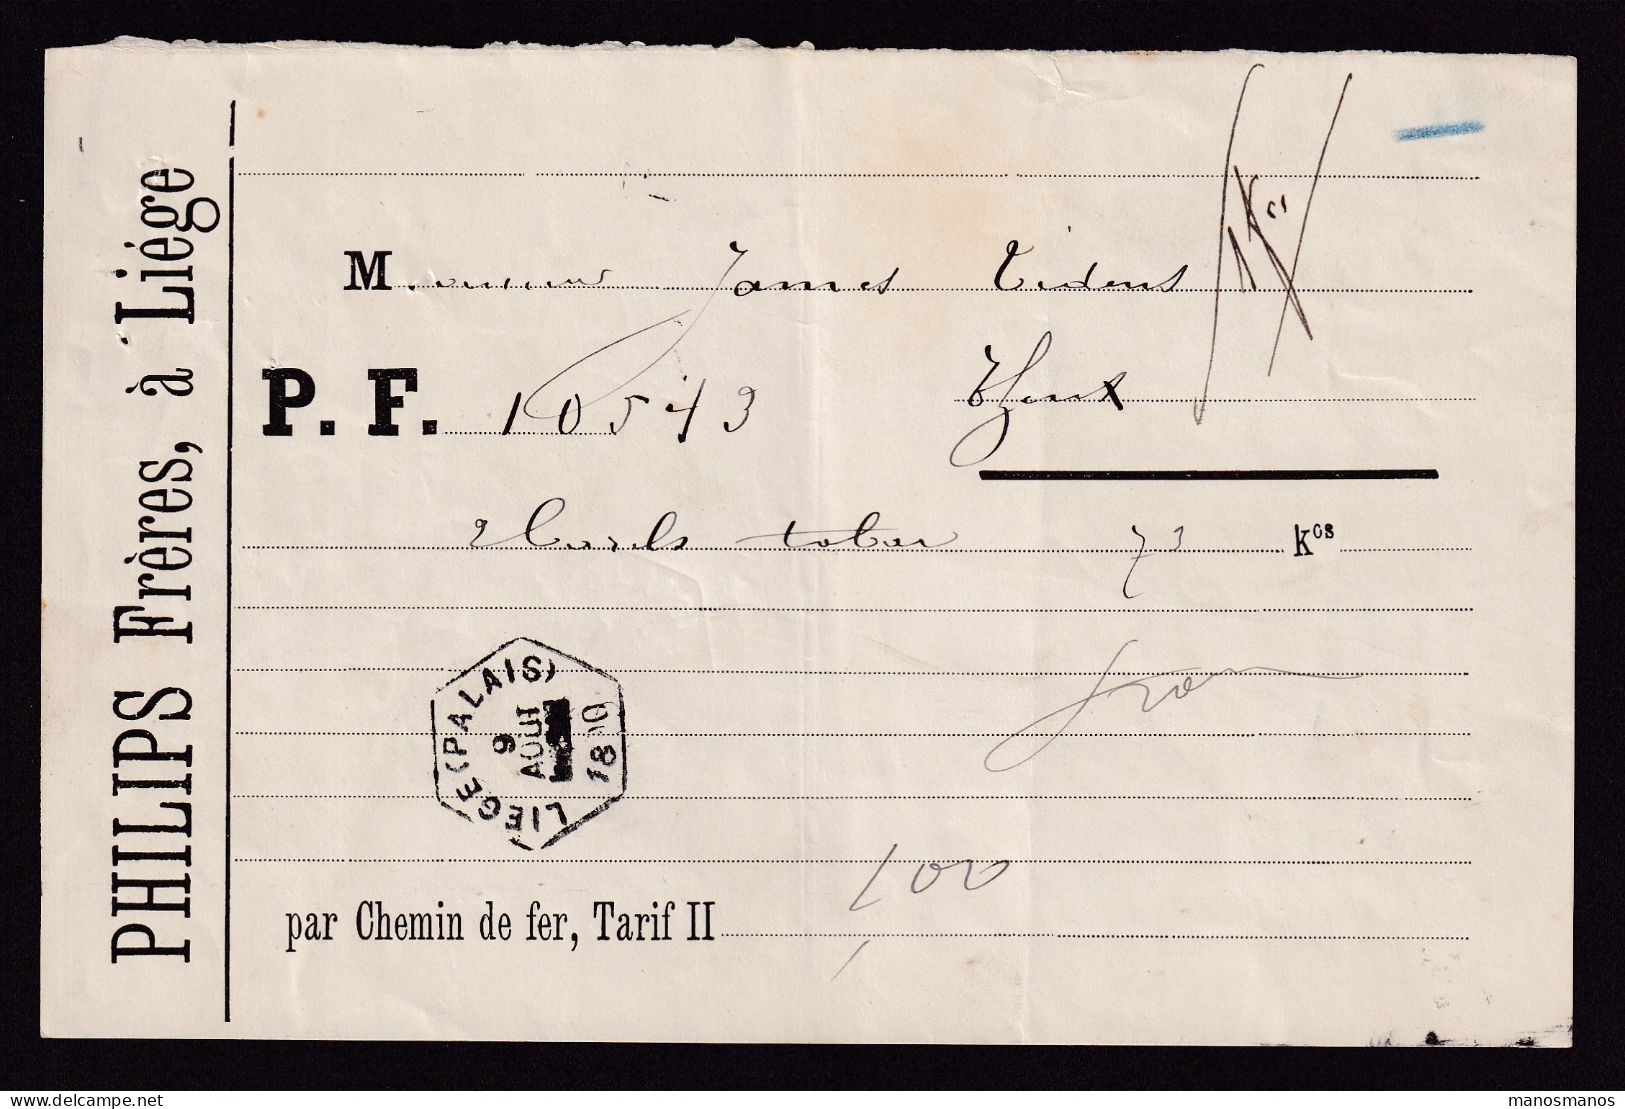 DDFF 820 -- BELGIUM - Lettre De Voiture Hexagonal Gare De LIEGE PALAIS 1890 à THEUX / Entete Philips Frères (TABAC) - Tabaco